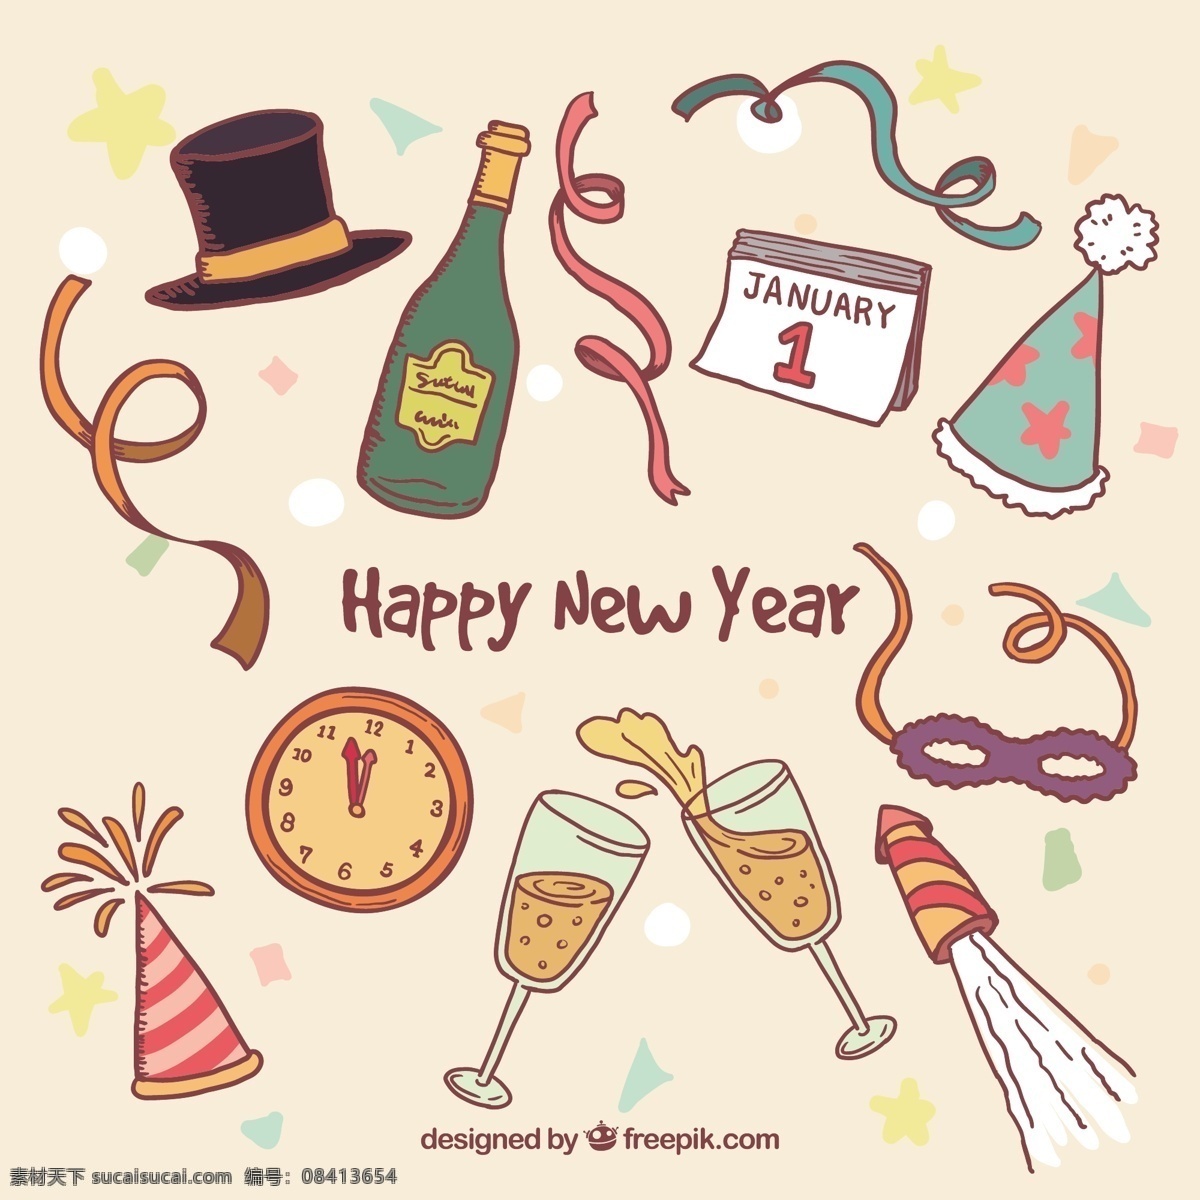 手绘 新 年 党 元素 方 一方面 新的一年 烟花 庆祝 新帽子 香槟 事件 绘图 手工绘图 绘制 方帽 粗略 白色